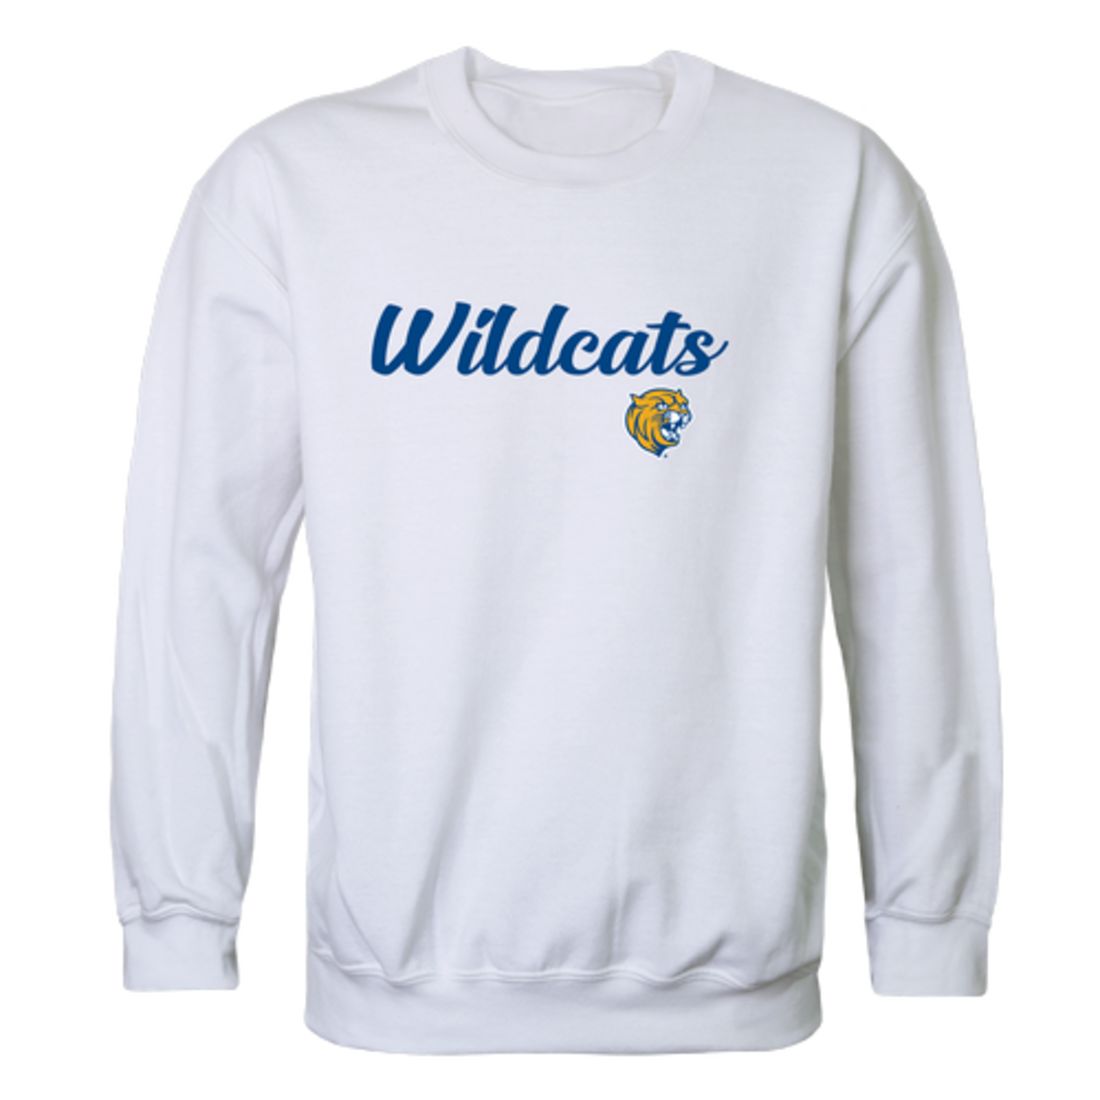 Johnson-&-Wales-University-Wildcats-Script-Fleece-Crewneck-Pullover-Sweatshirt